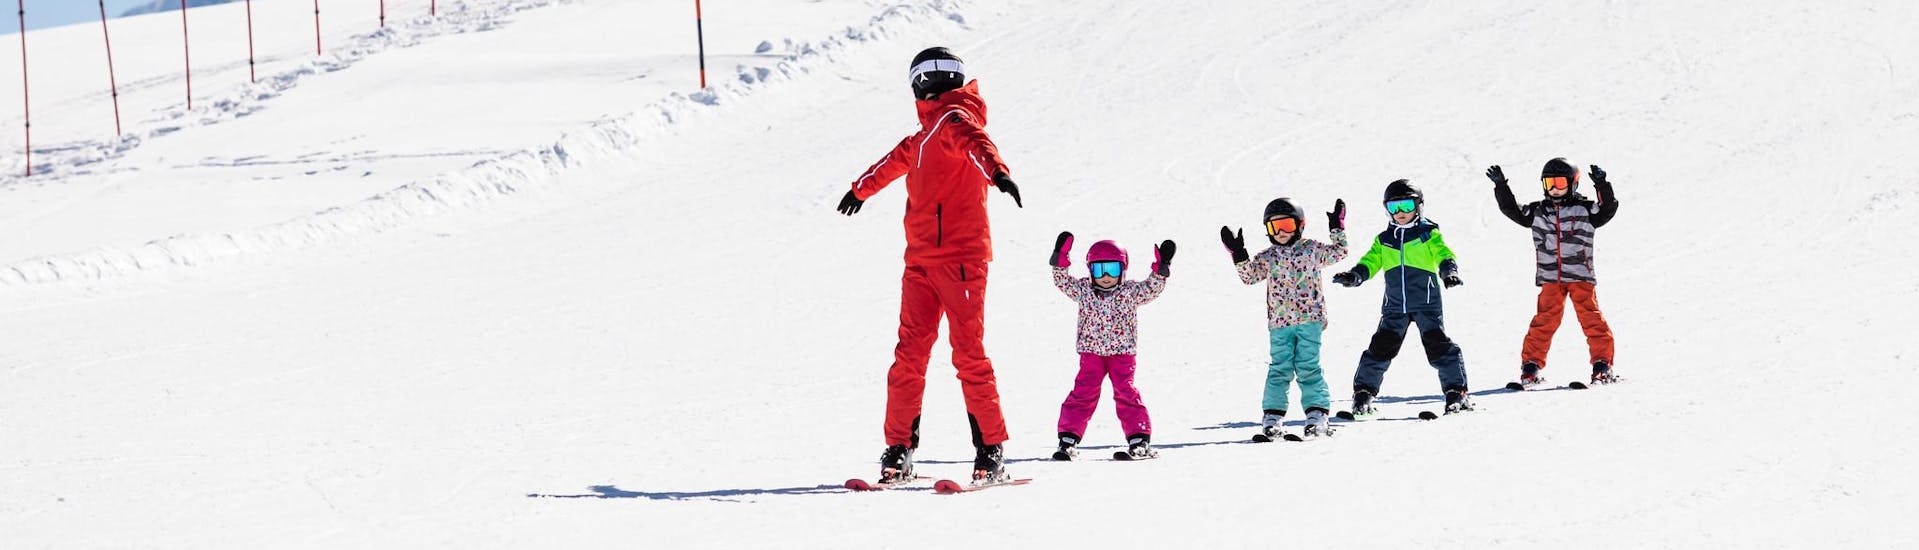 Skileraar en kinderen skiën de piste af tijdens een skiles.